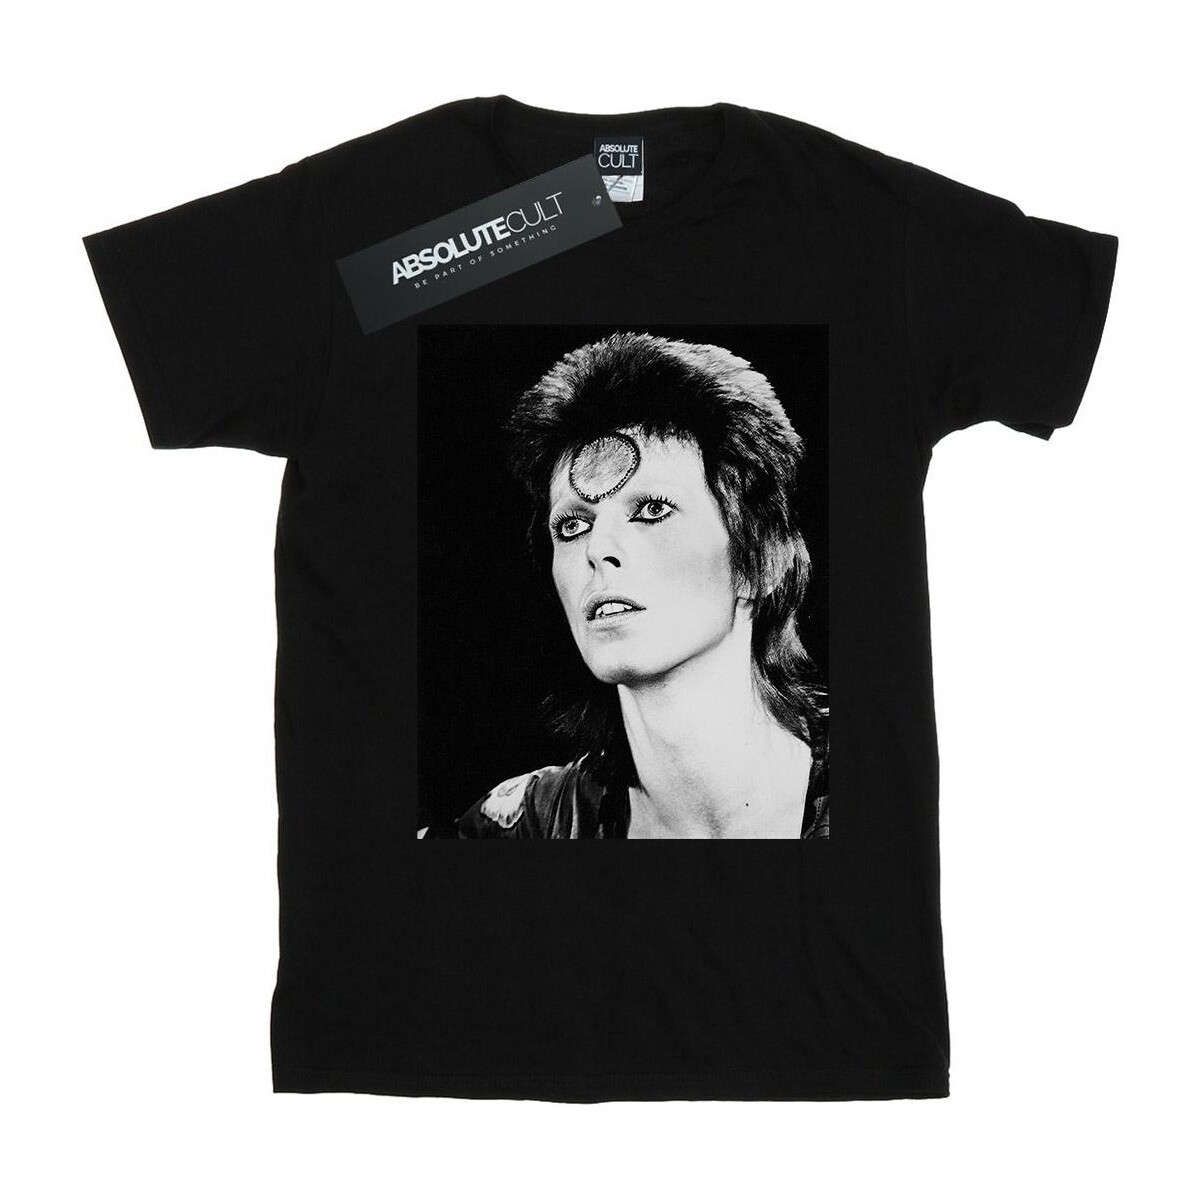 Vêtements Garçon T-shirts manches courtes David Bowie  Noir